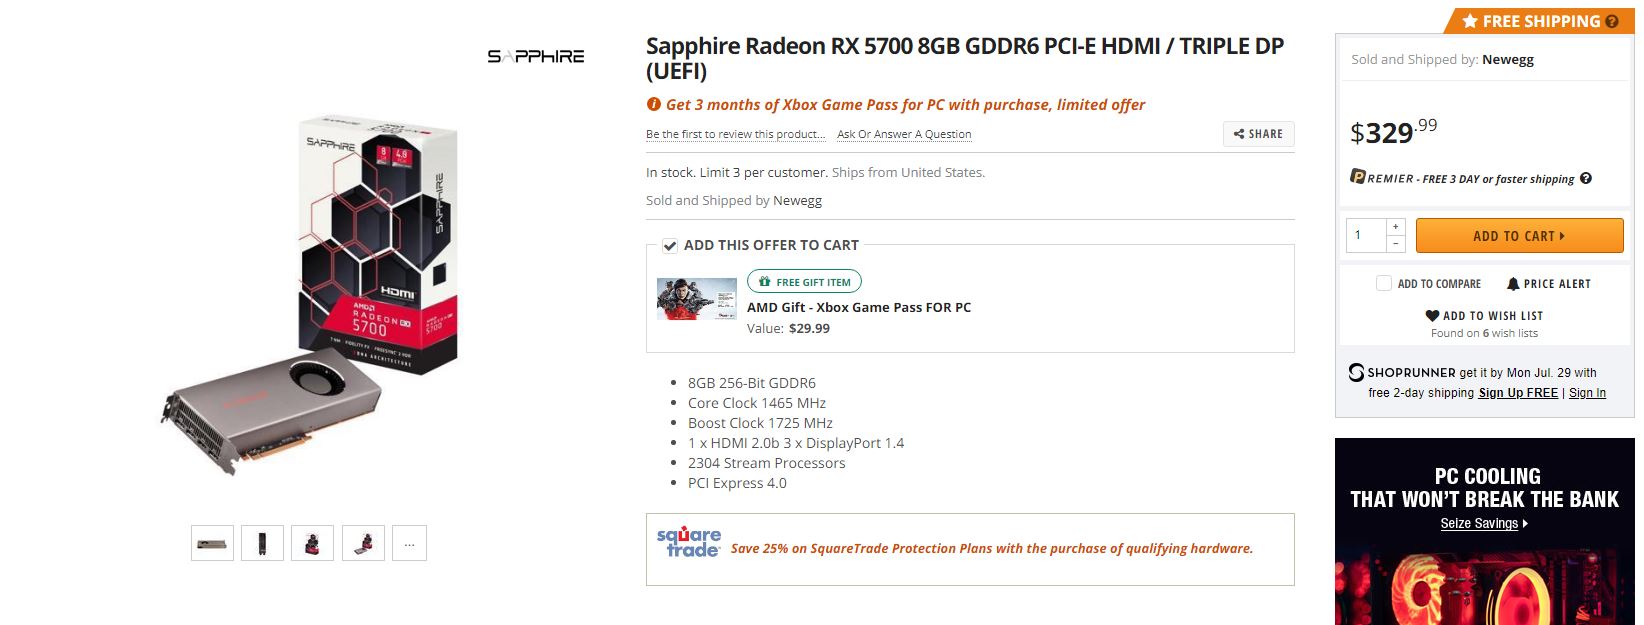 AMD RYZEN9 3900X ขายดีในจนยอดสั่งซื้อไม่พอและการ์ดจอ RADEON RX 5700XT เตรียมลดราคาลงอีกในเว็บไซต์ออนไลน์ต่างประเทศ